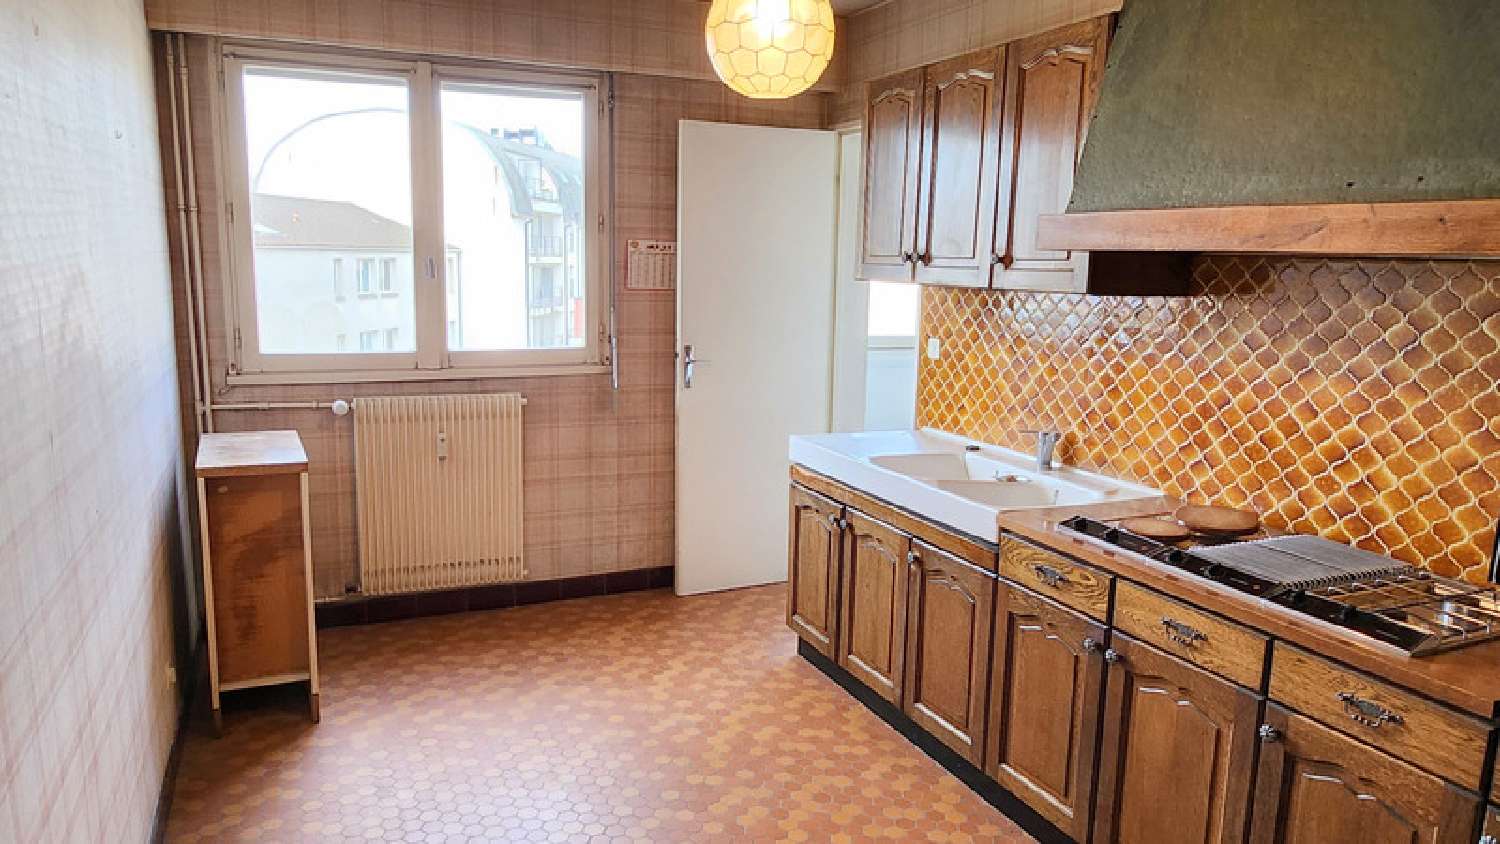  à vendre appartement Limoges Haute-Vienne 4